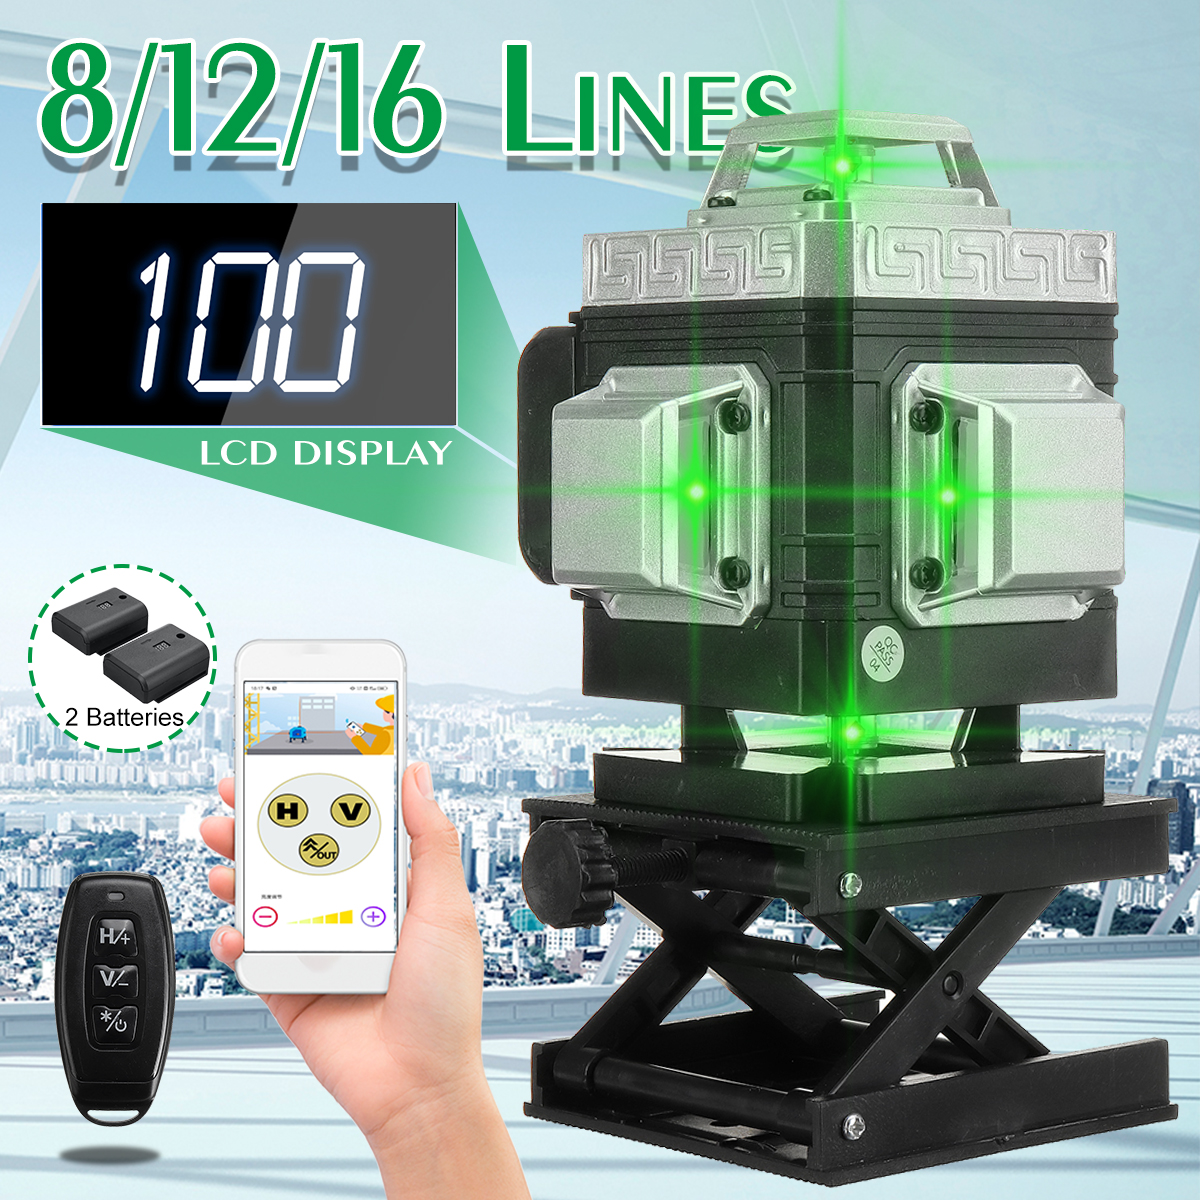 81216-Line-360deg-4D-Line-Laser-Level-Green-Light-Self-Leveling-Cross-Measure-Tool-Kit-1864007-1